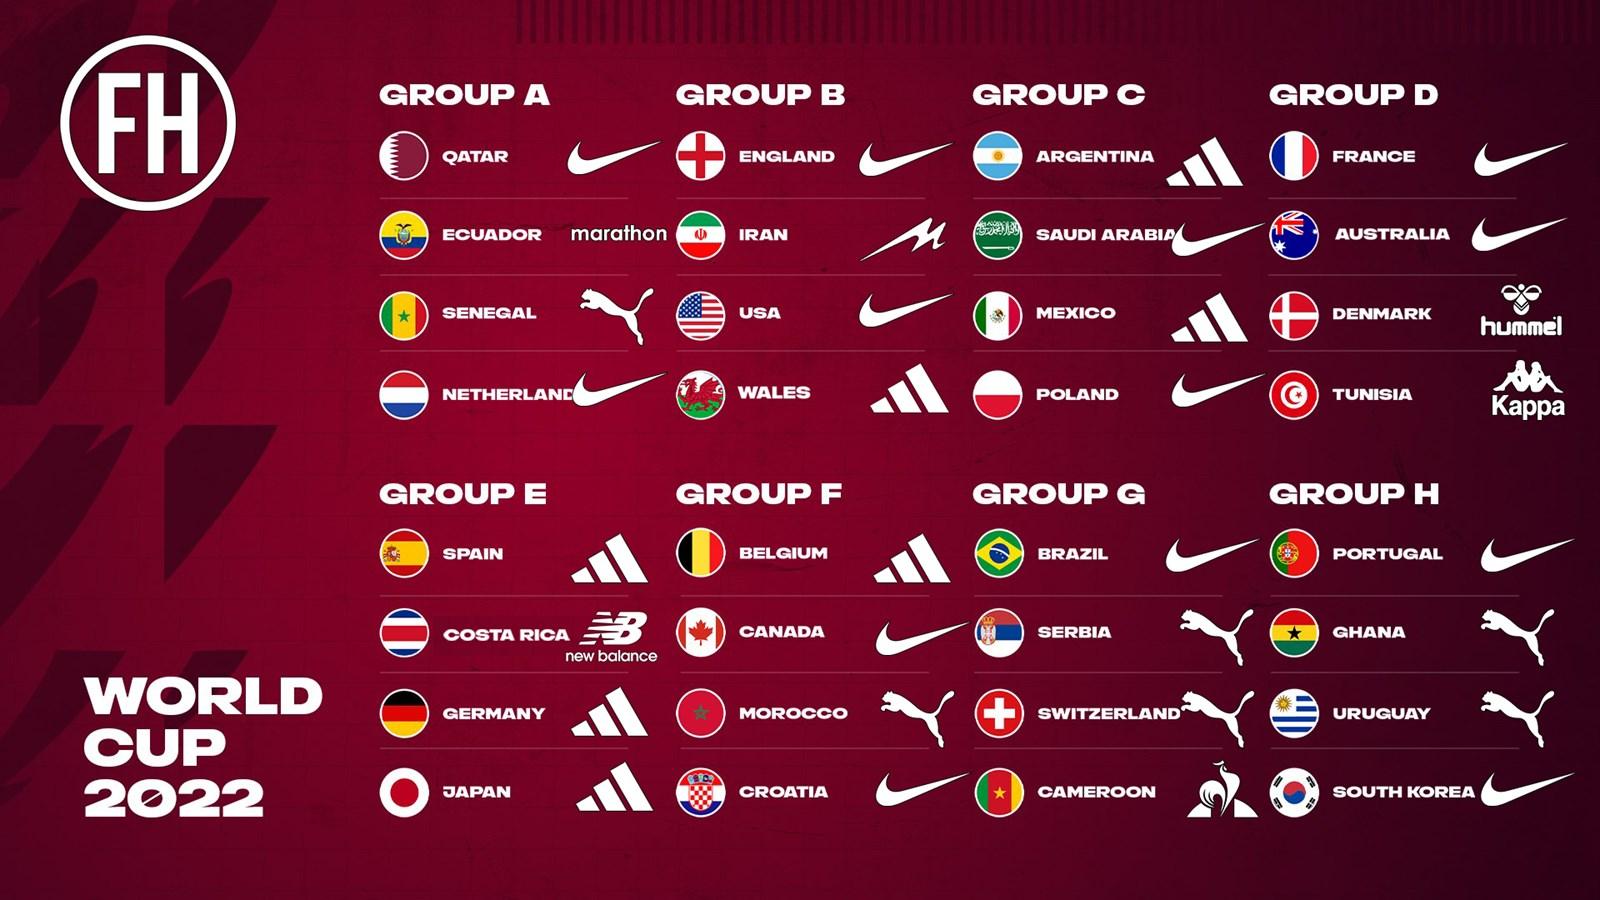 แฟชั่นฟุตบอลโลก 2022 แบ่งตามกลุ่ม